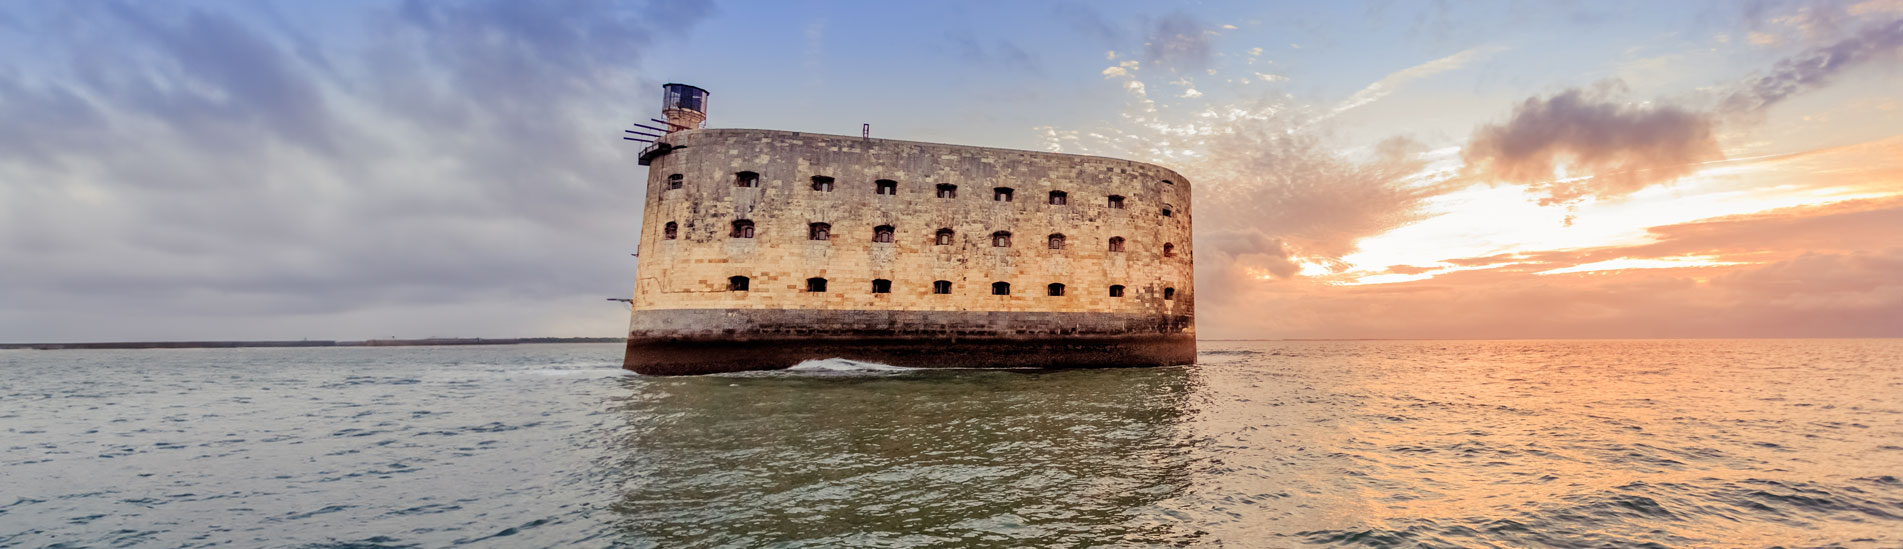 Le Fort Boyard, une forteresse en mer au large de la côte ouest de la France, baignée par la lumière du coucher de soleil.